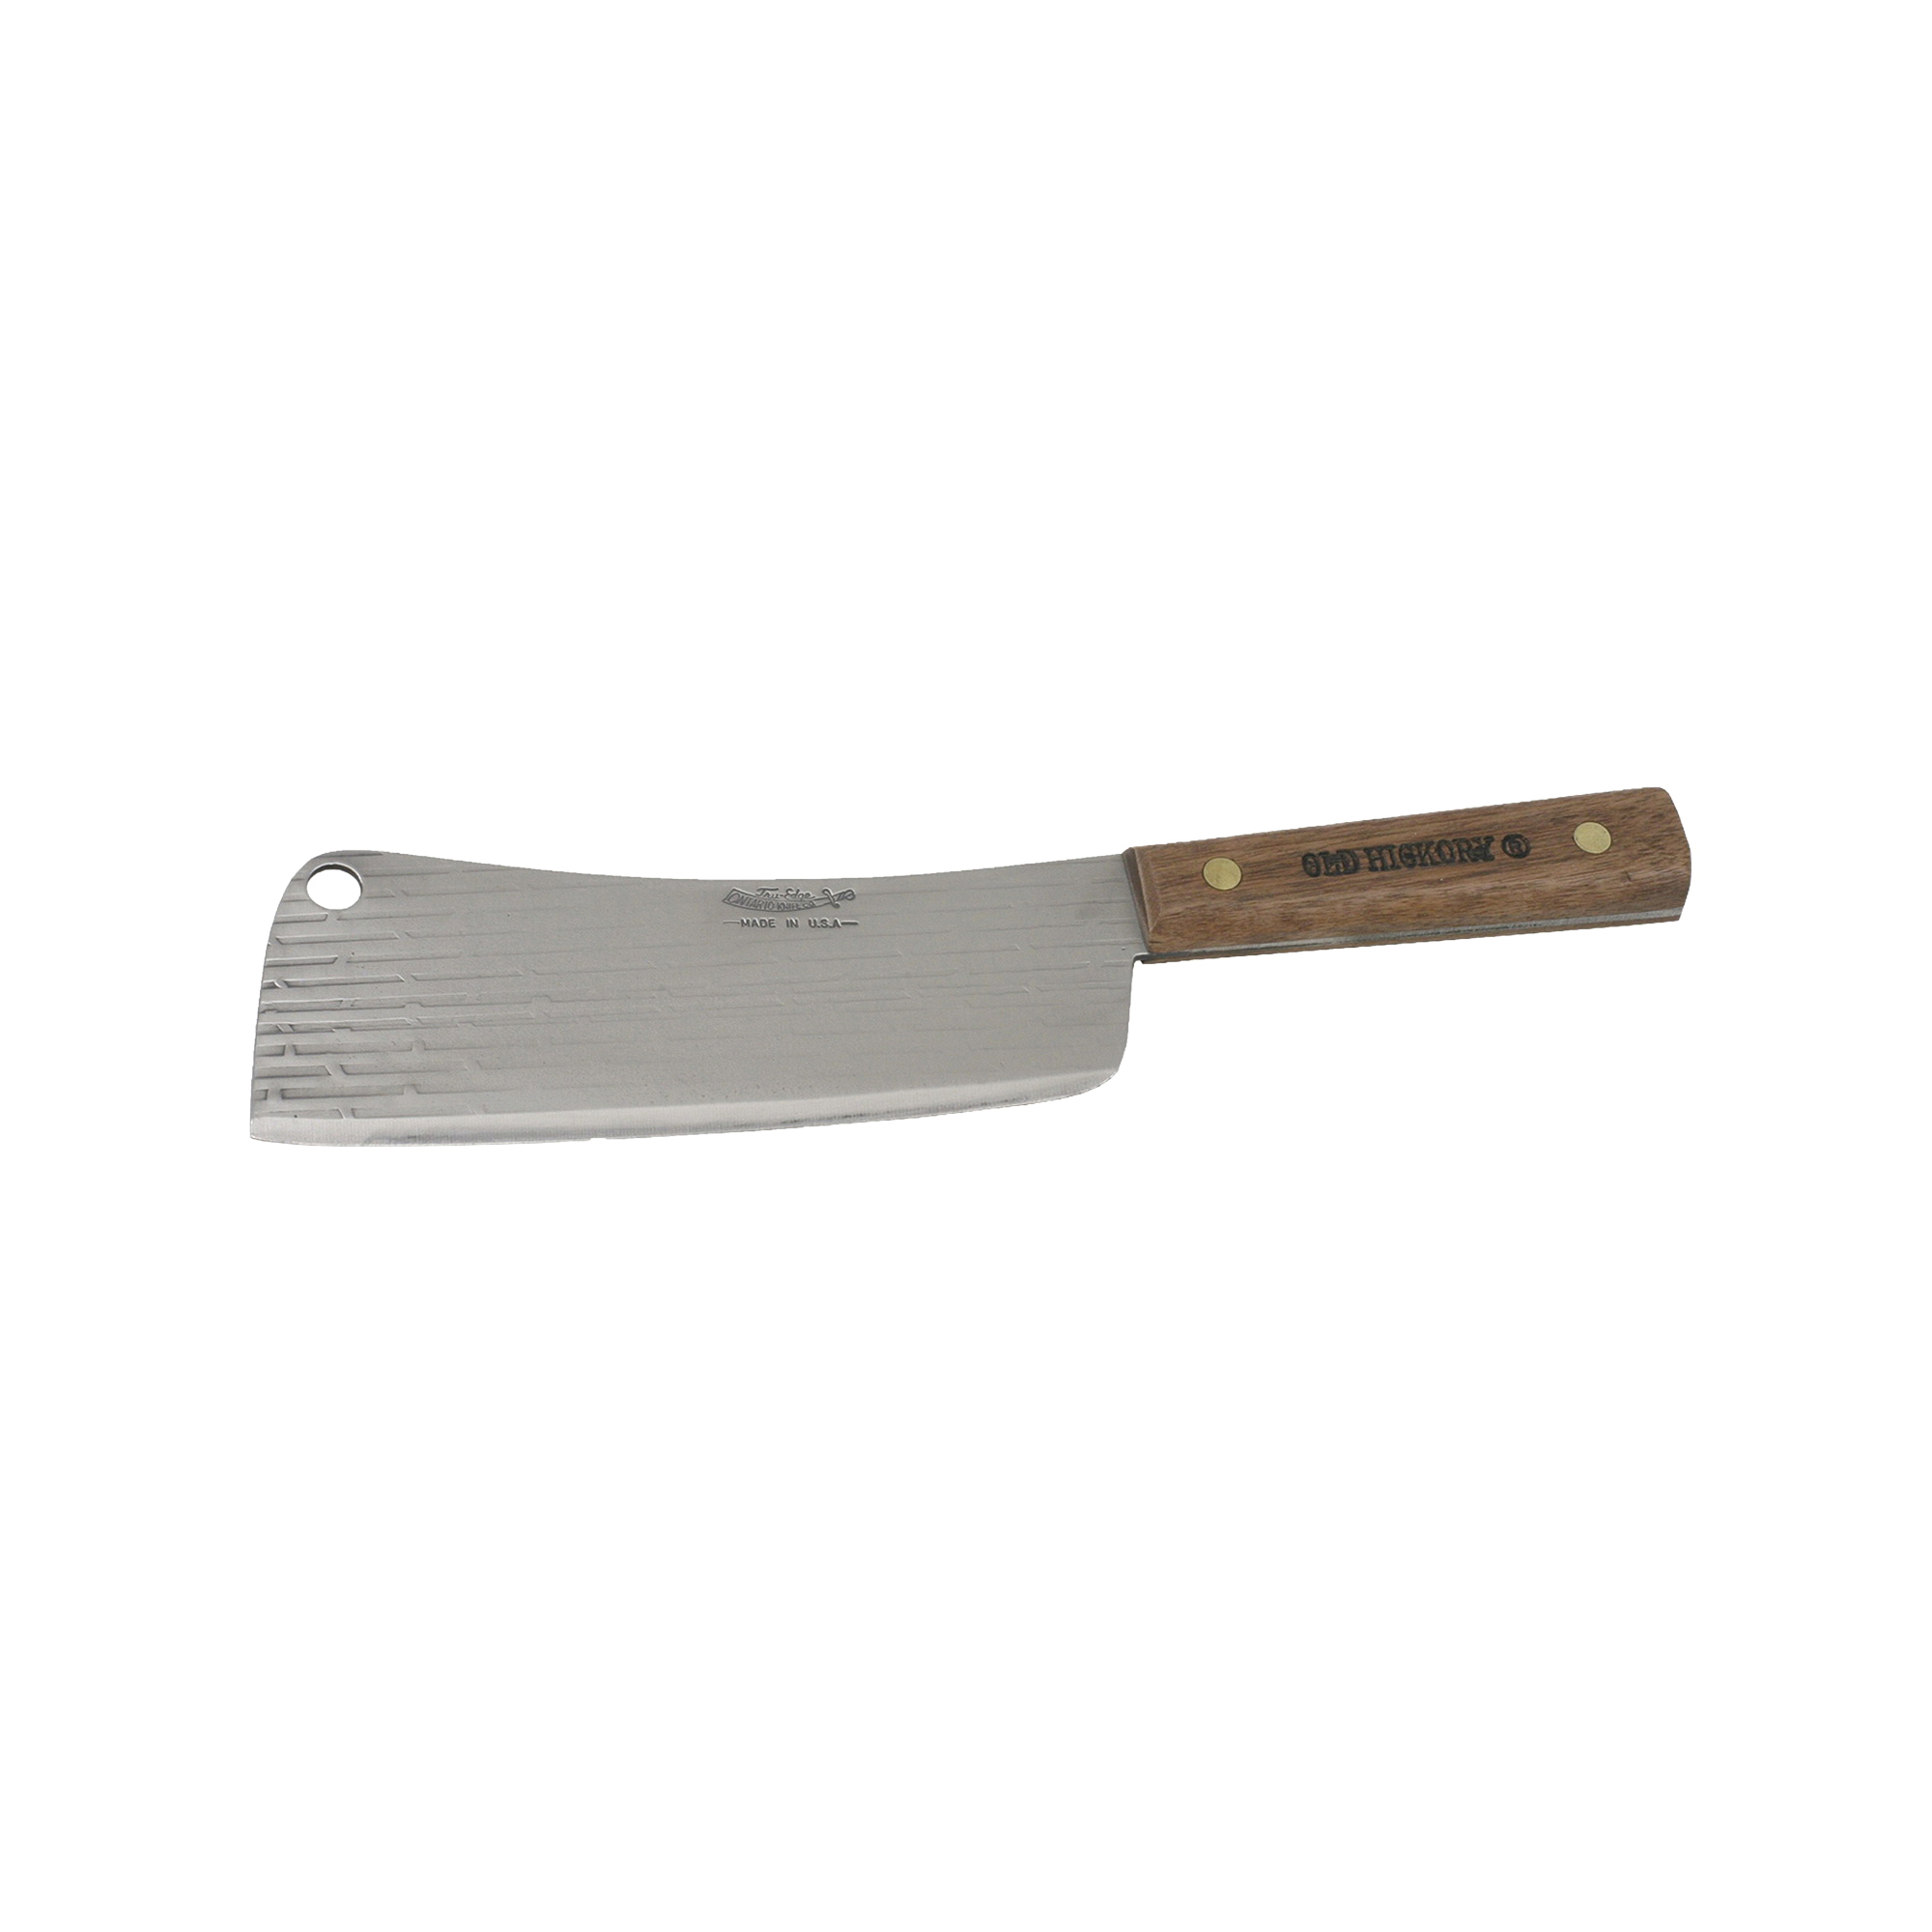 076-7 Cleaver, 7-1/2 in L Blade, Carbon Steel Blade, Hardwood Handle, Brown Handle